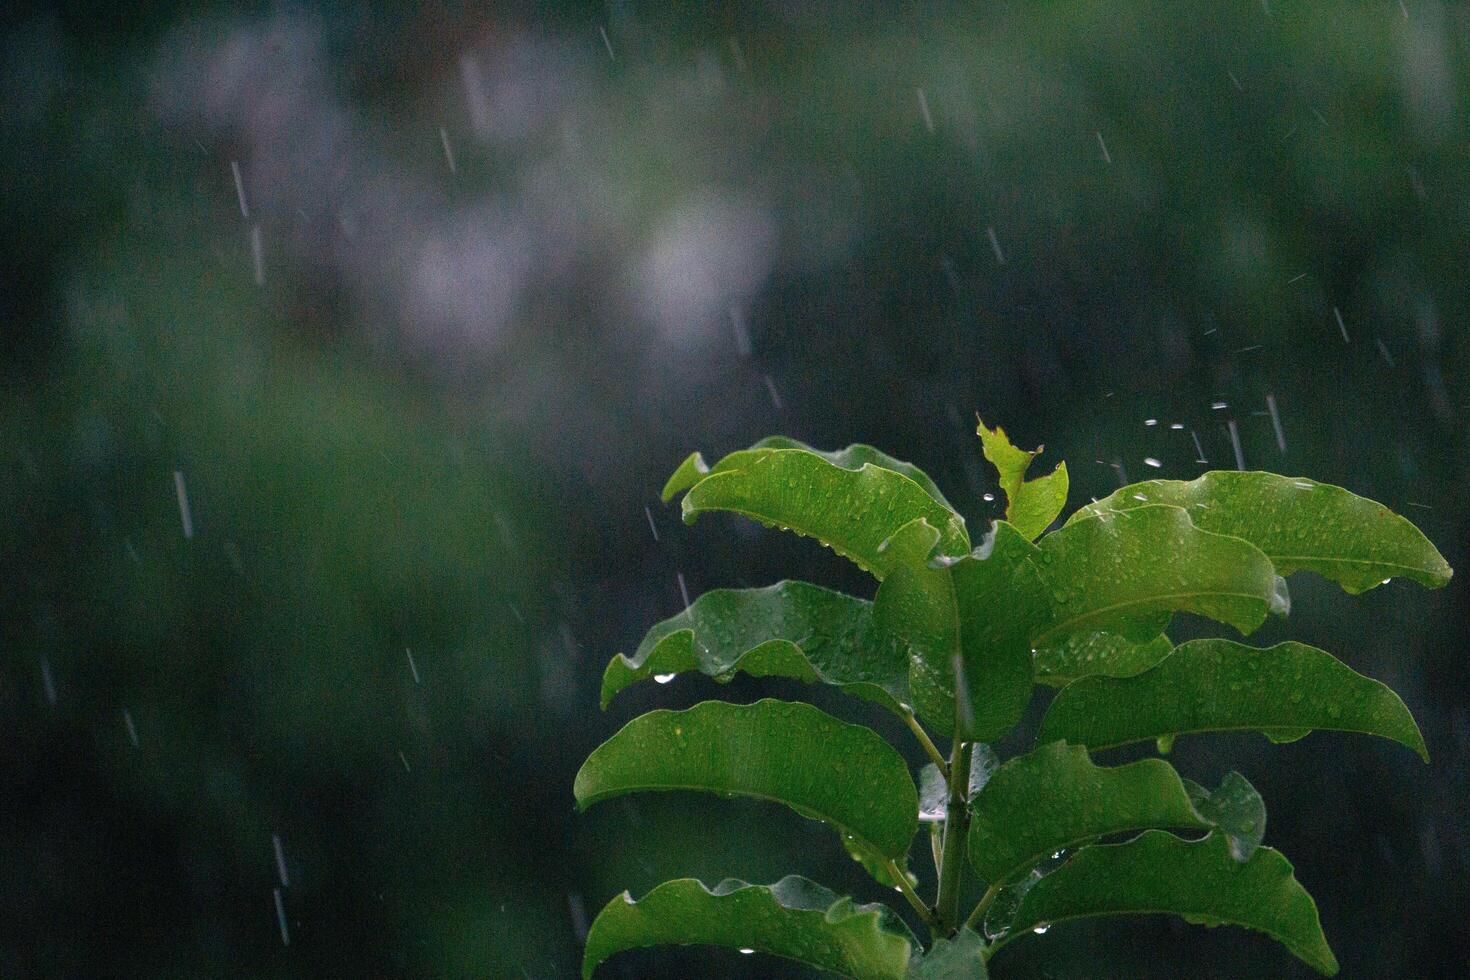 Natur frisch Grün Blatt Ast unter Havy Regen im regnerisch Jahreszeit. Sommer- Regen im üppig Grün Wald, mit schwer Regenfall Hintergrund. regnet Dusche fallen auf Blatt Baum foto